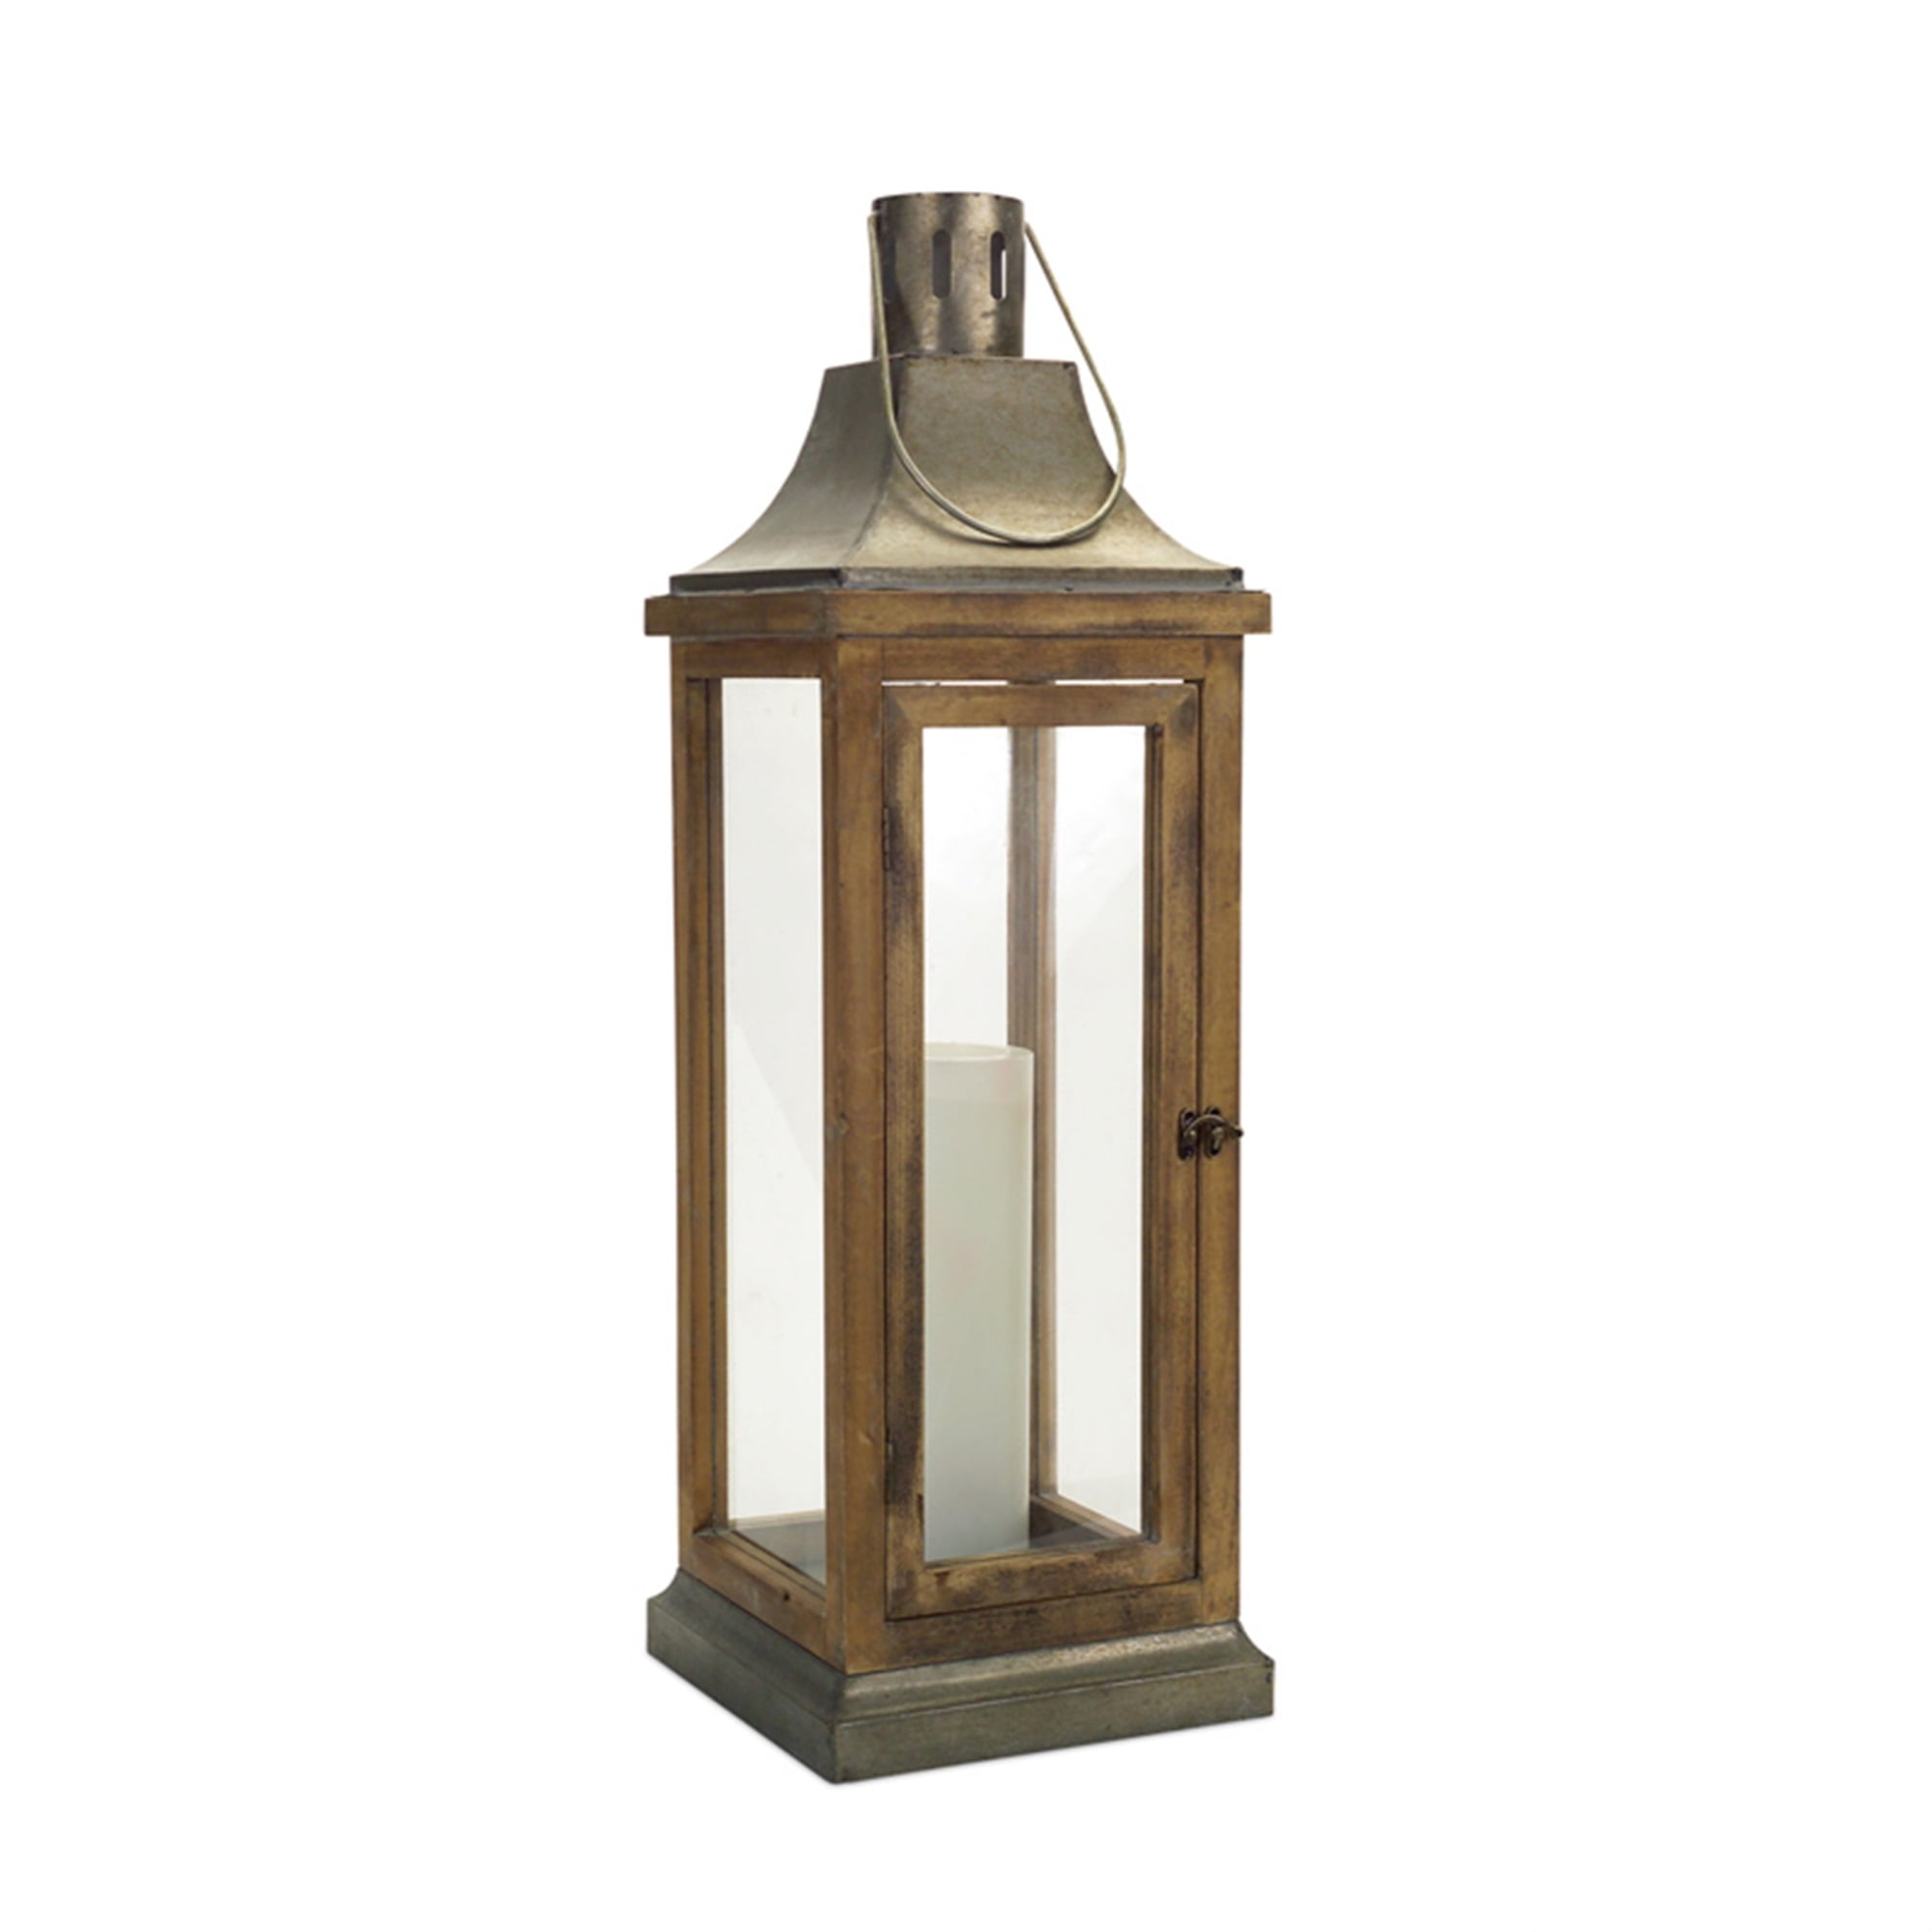 Lantern 39.5"H Metal/Wood